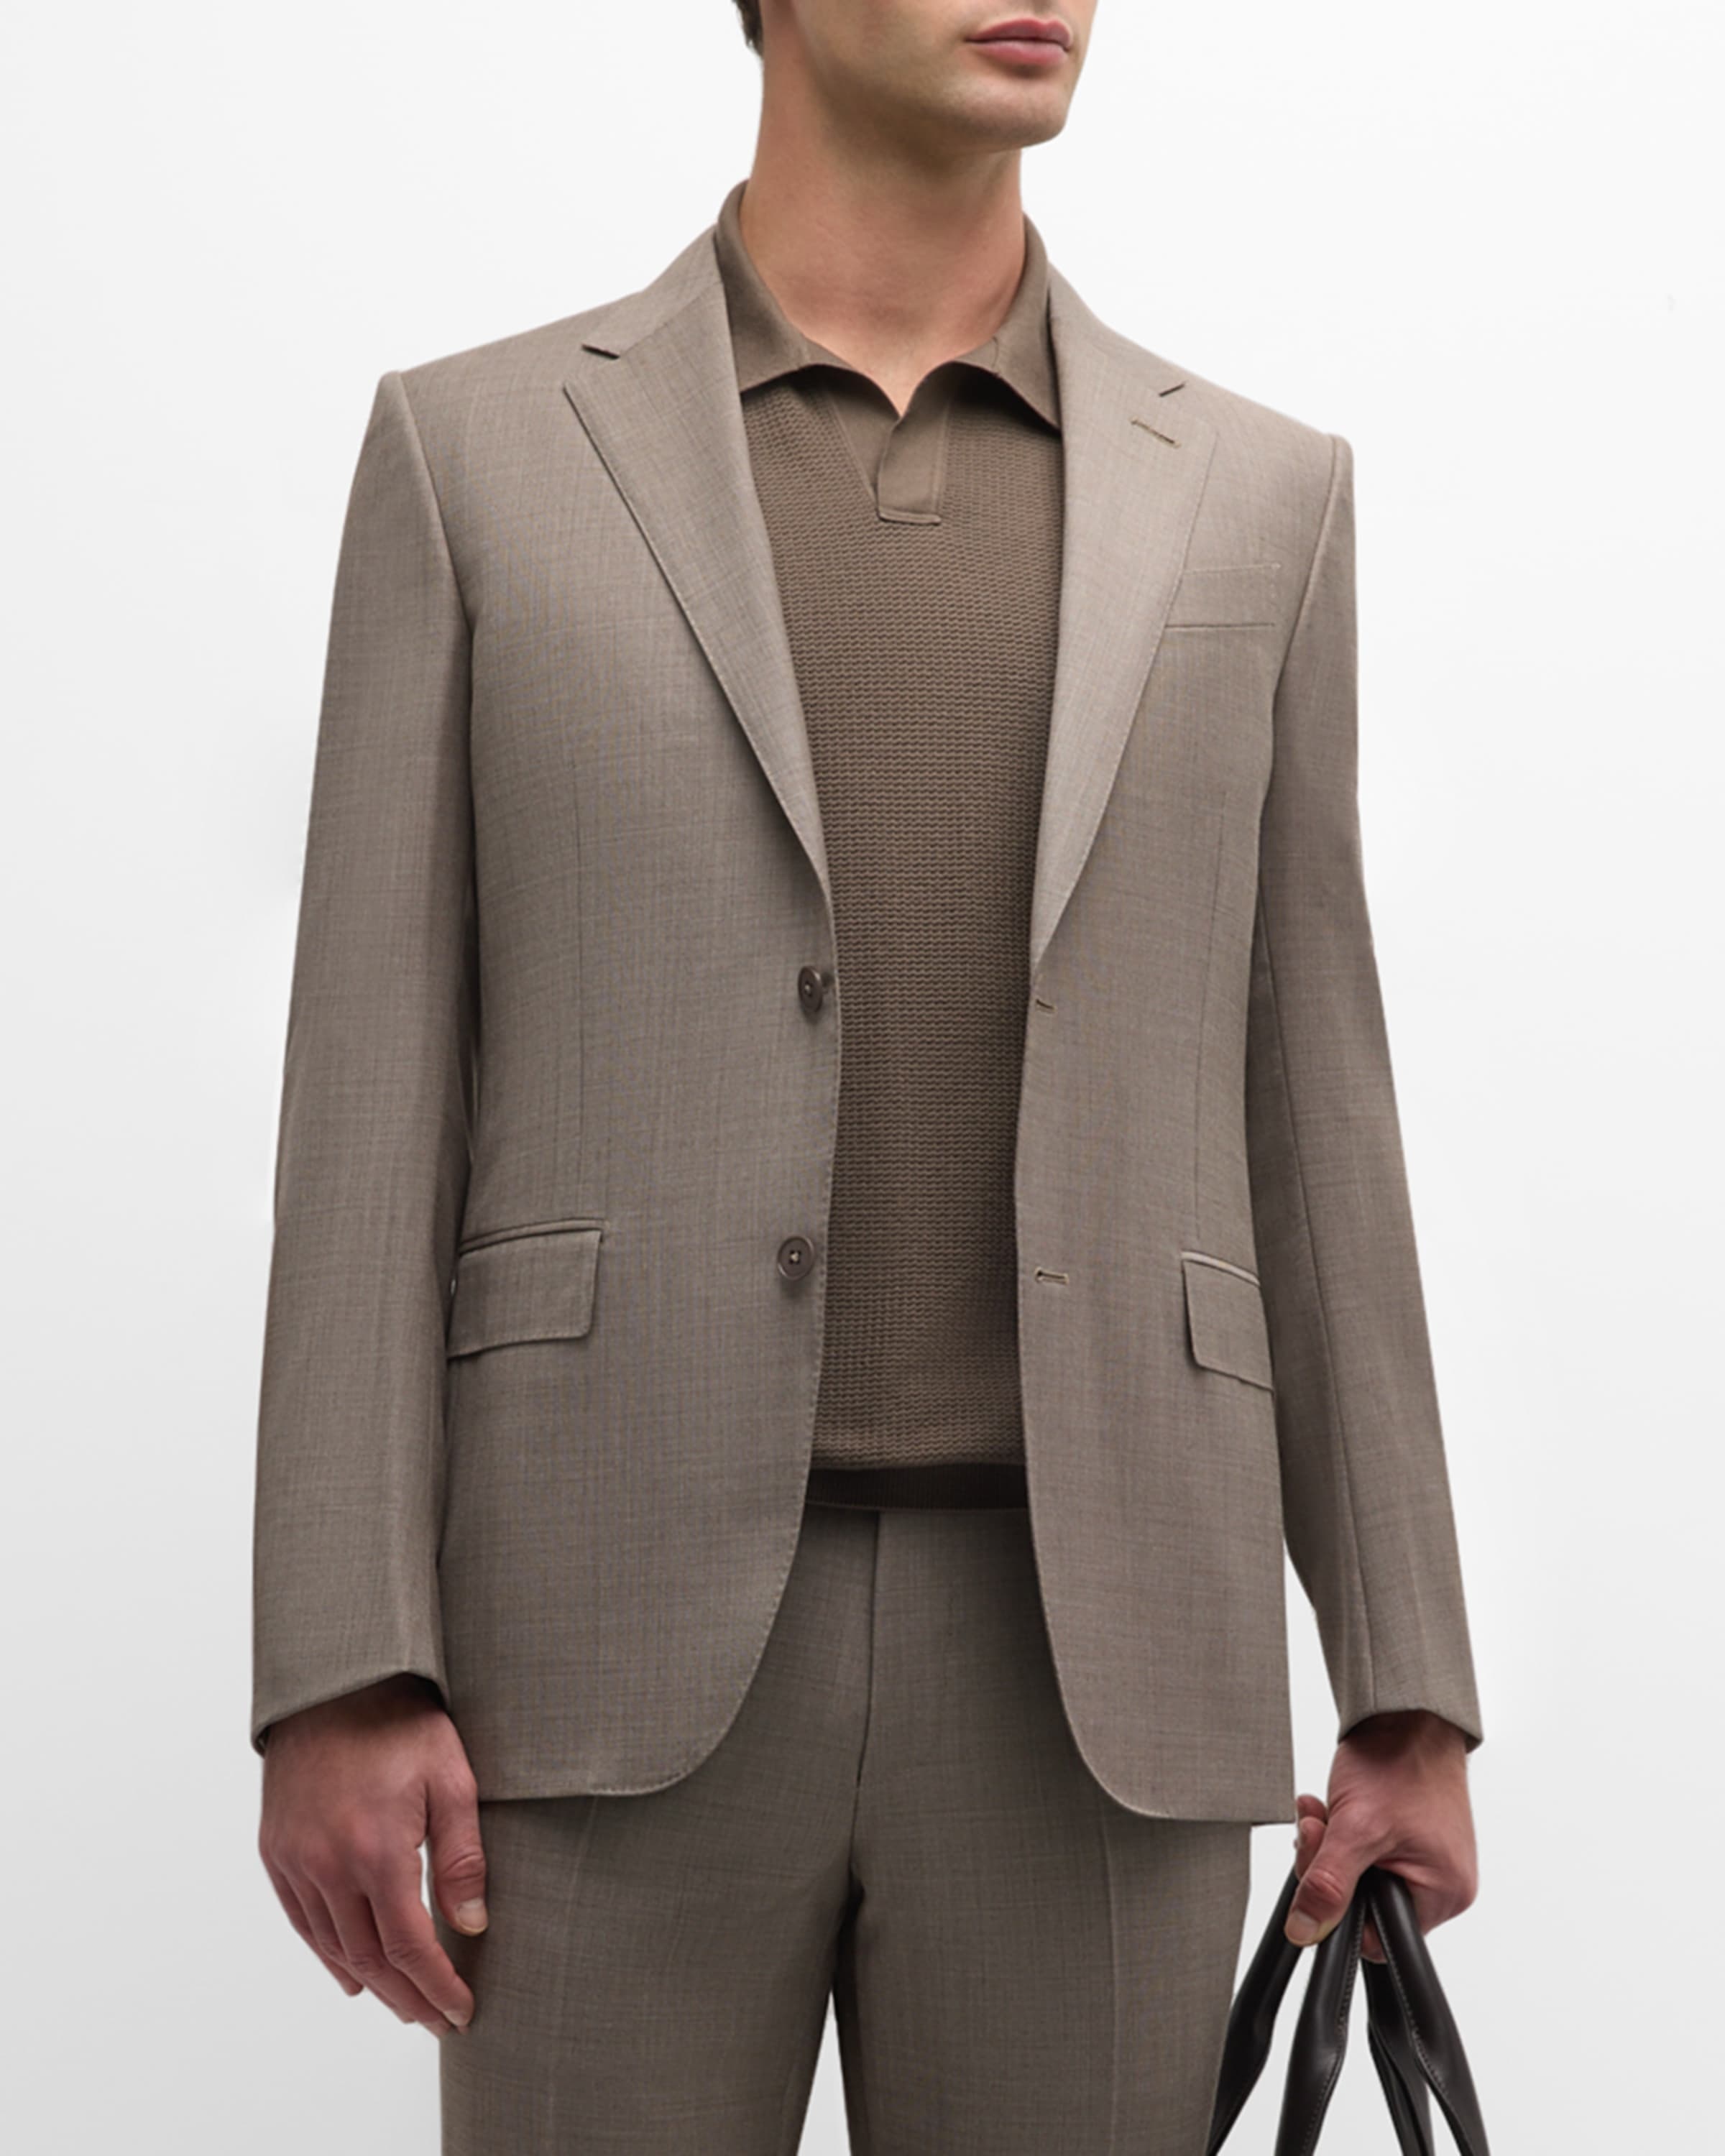 Men's Wool Sharkskin Suit - 1